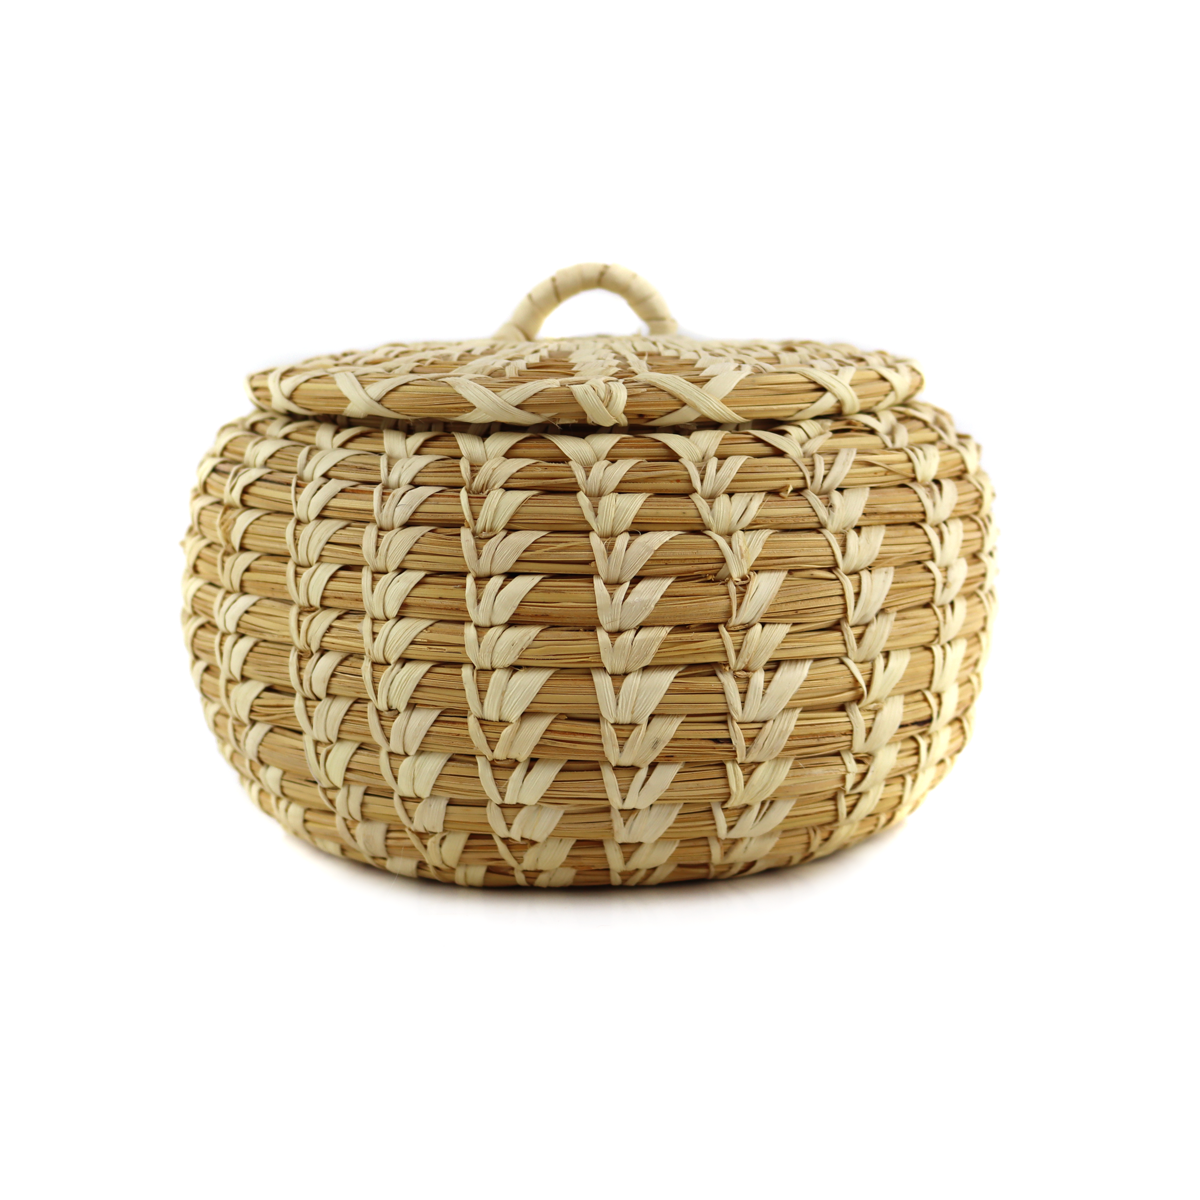 Tohono O'odham Lidded Gap Stitch Basket c. 1960s, 4.5" x 6.5"